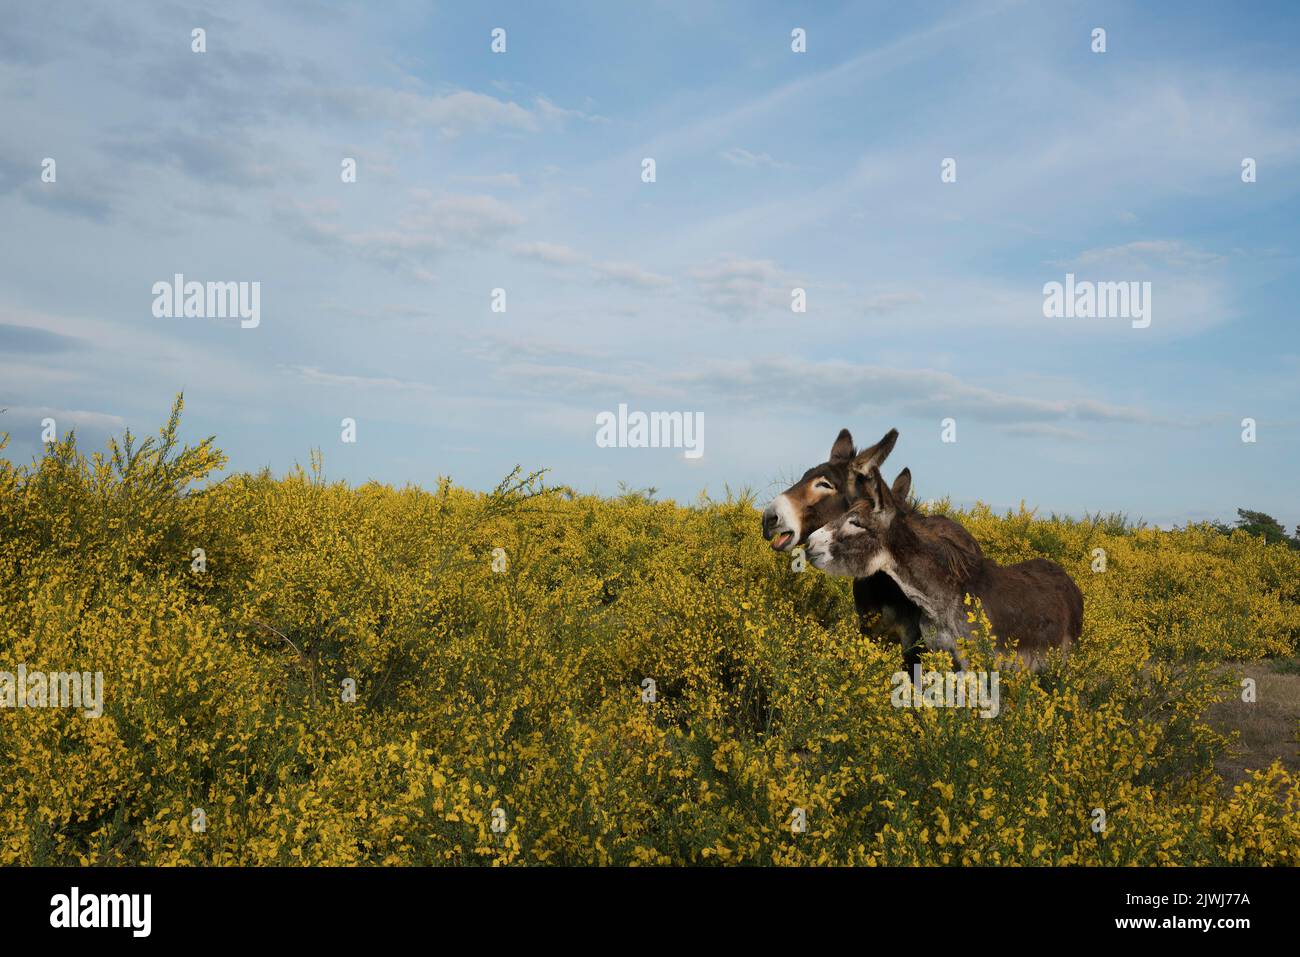 Asini marroni in campo rurale con cespugli gialli Foto Stock